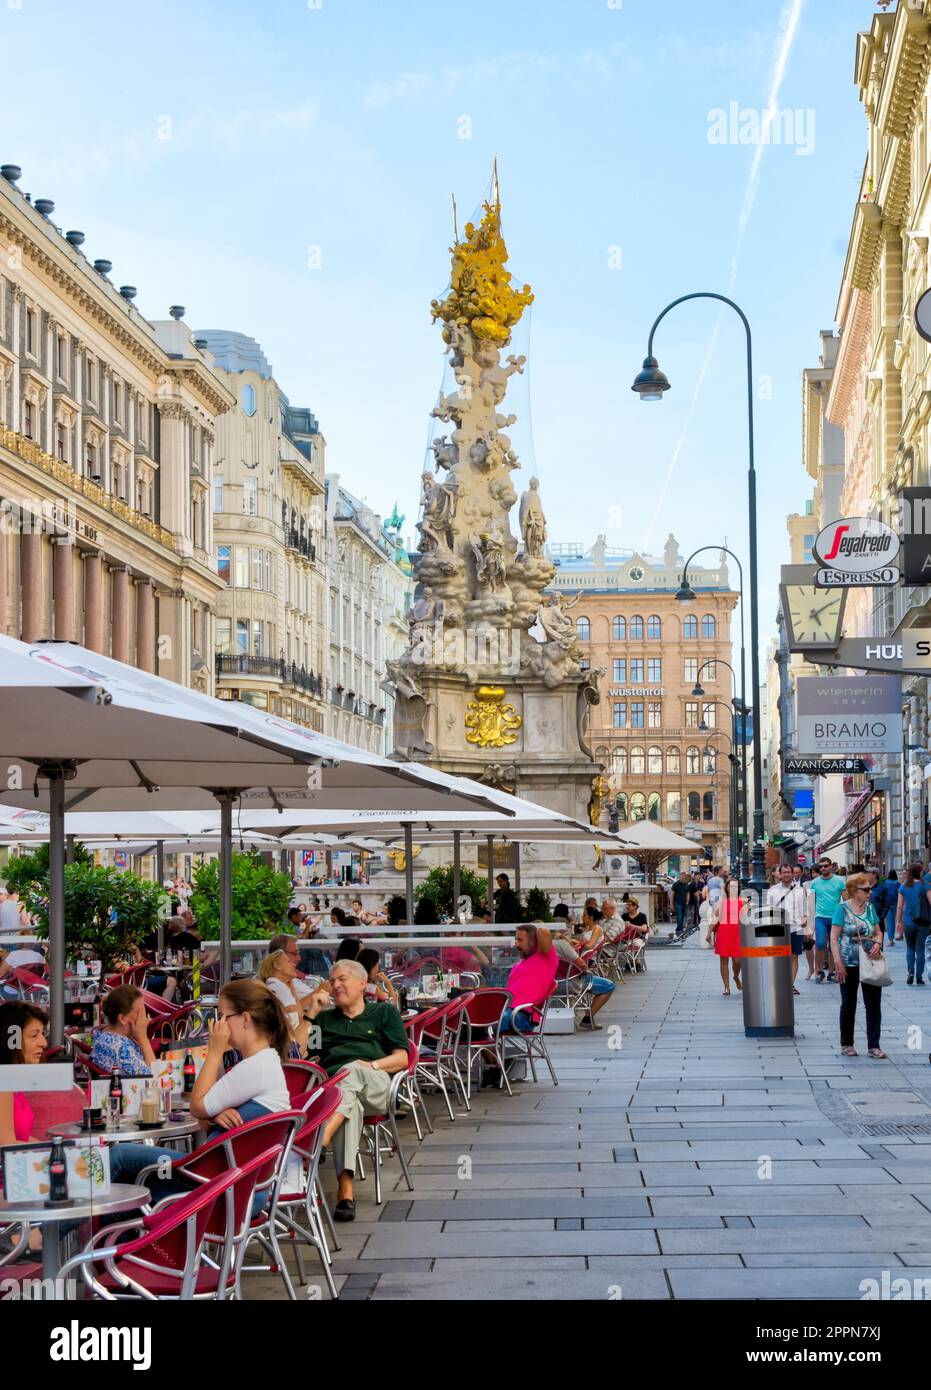 VIENA, AUSTRIA - 28 DE AGOSTO: Personas en un restaurante en la zona peatonal de Viena, Austria el 28 de agosto de 2017. Foto con vista al barroco Foto de stock